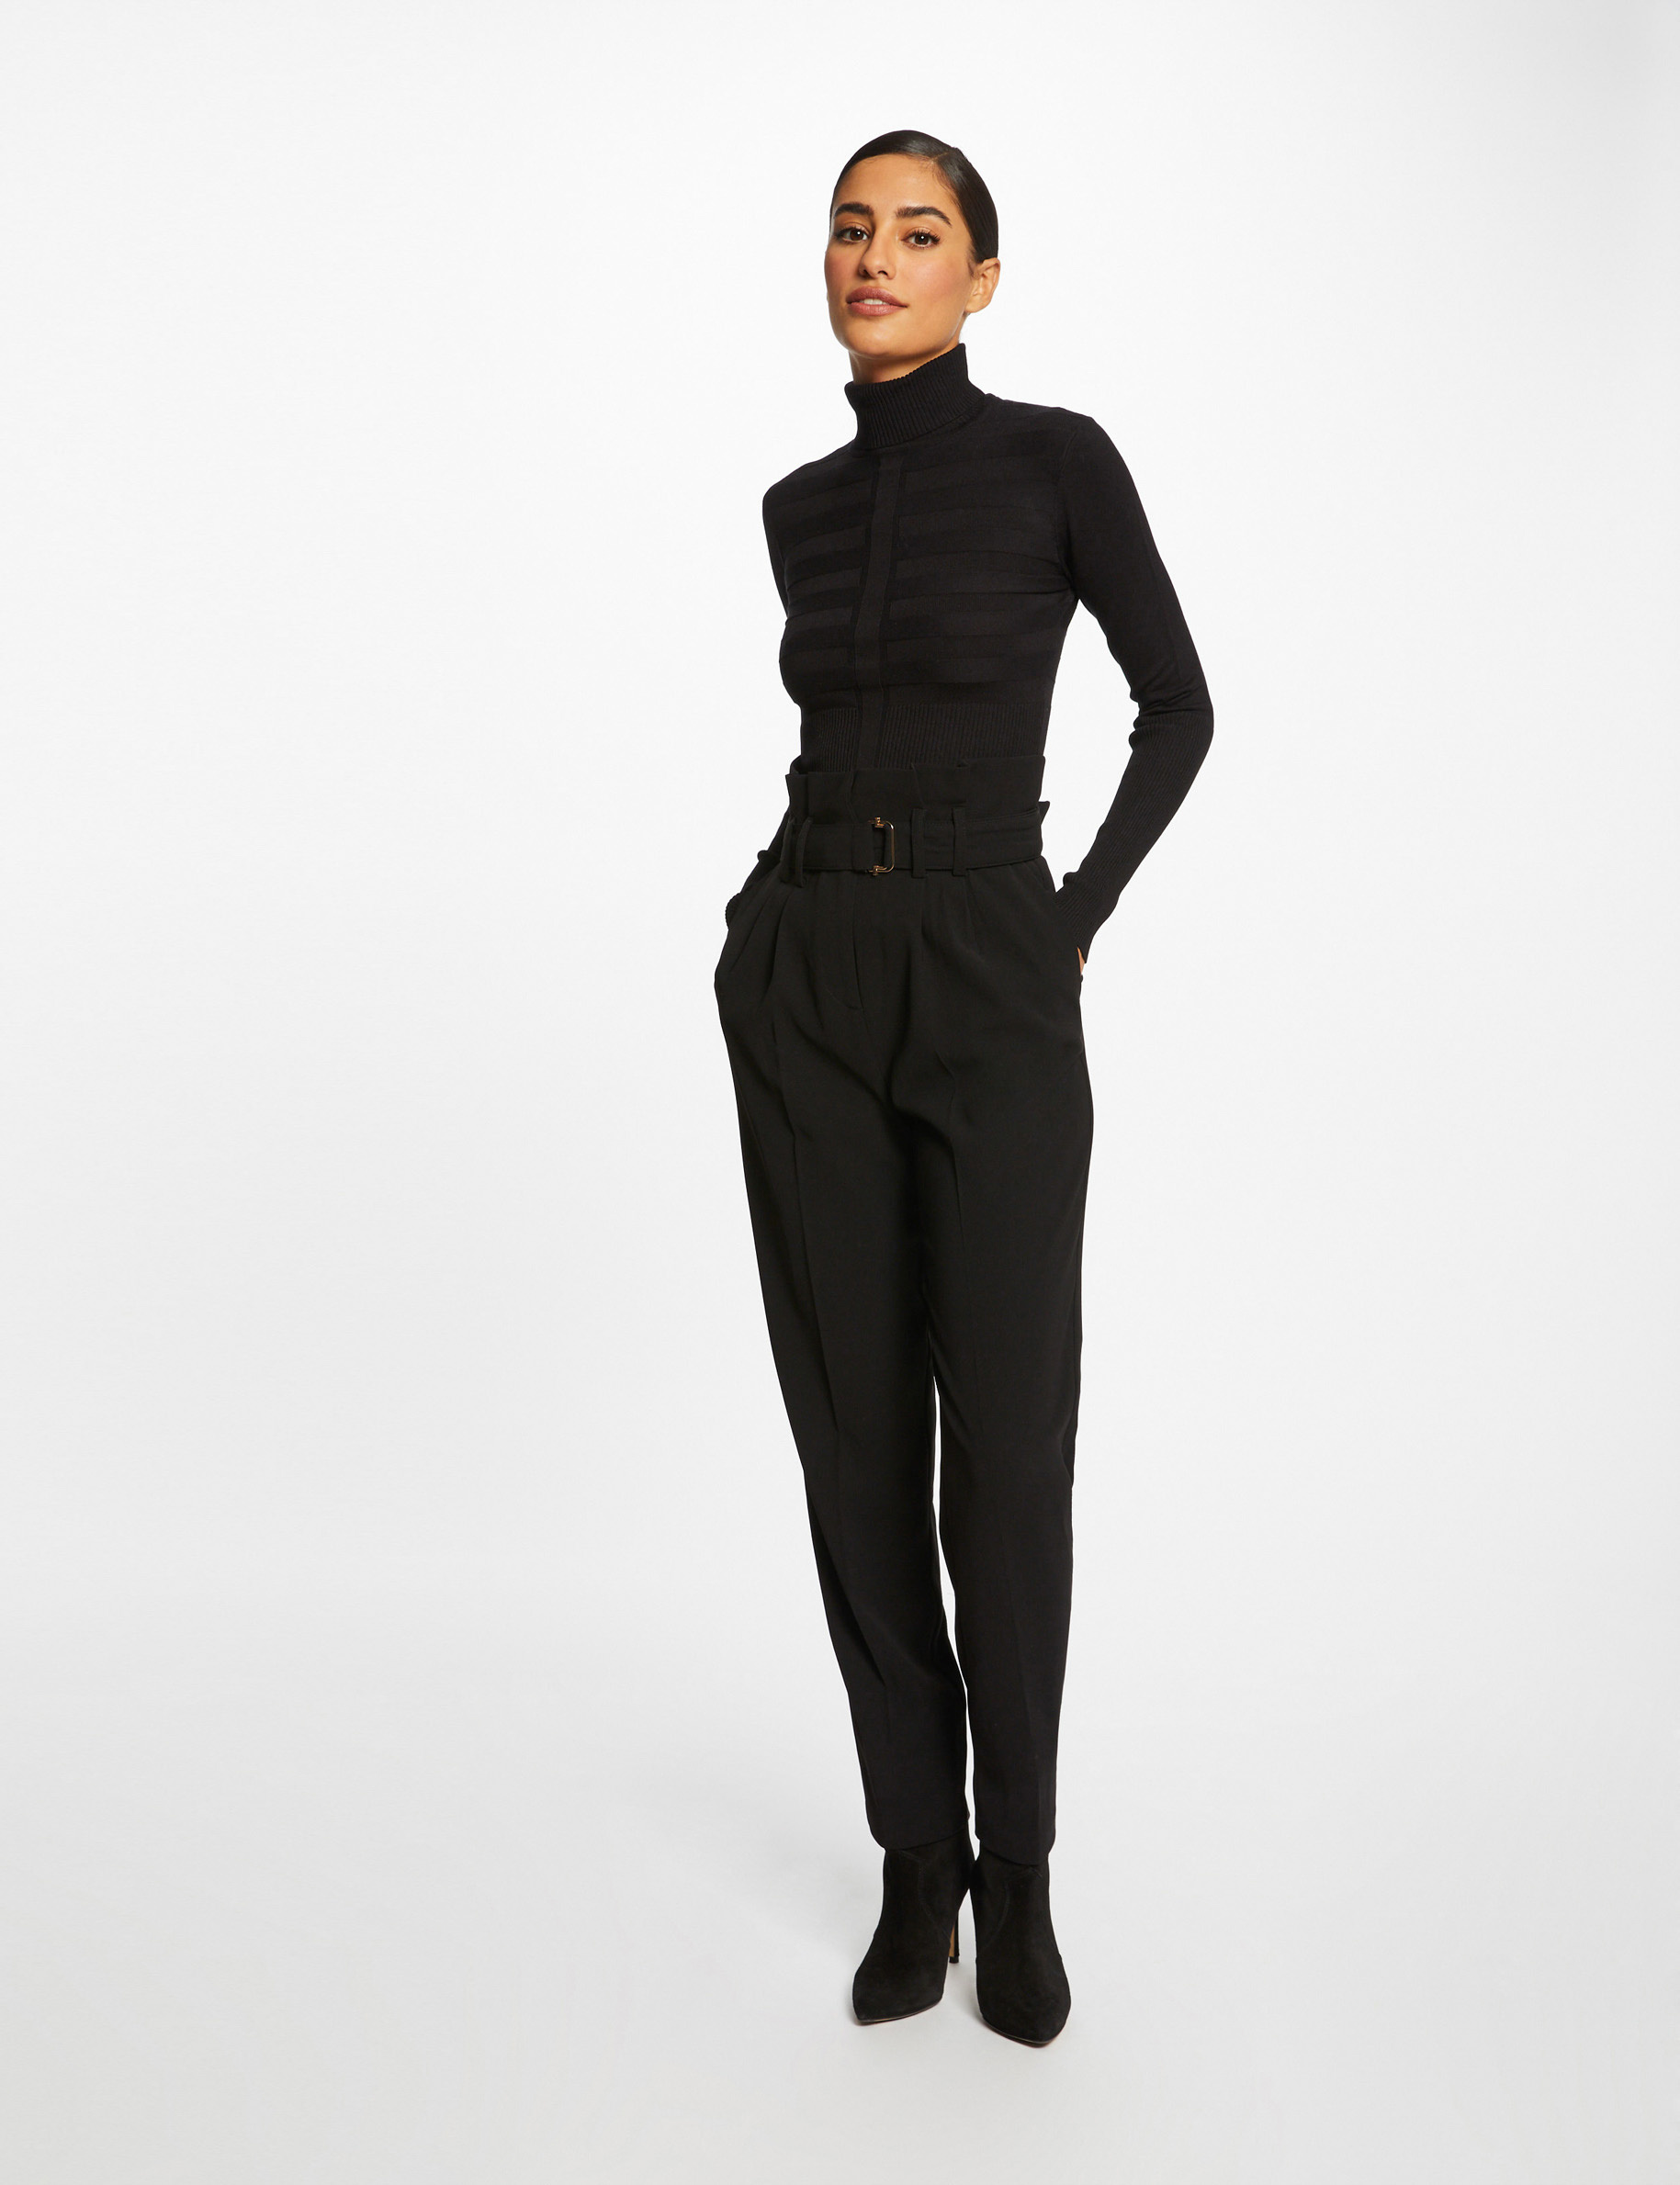 Long-sleeved jumper turtleneck black ladies'